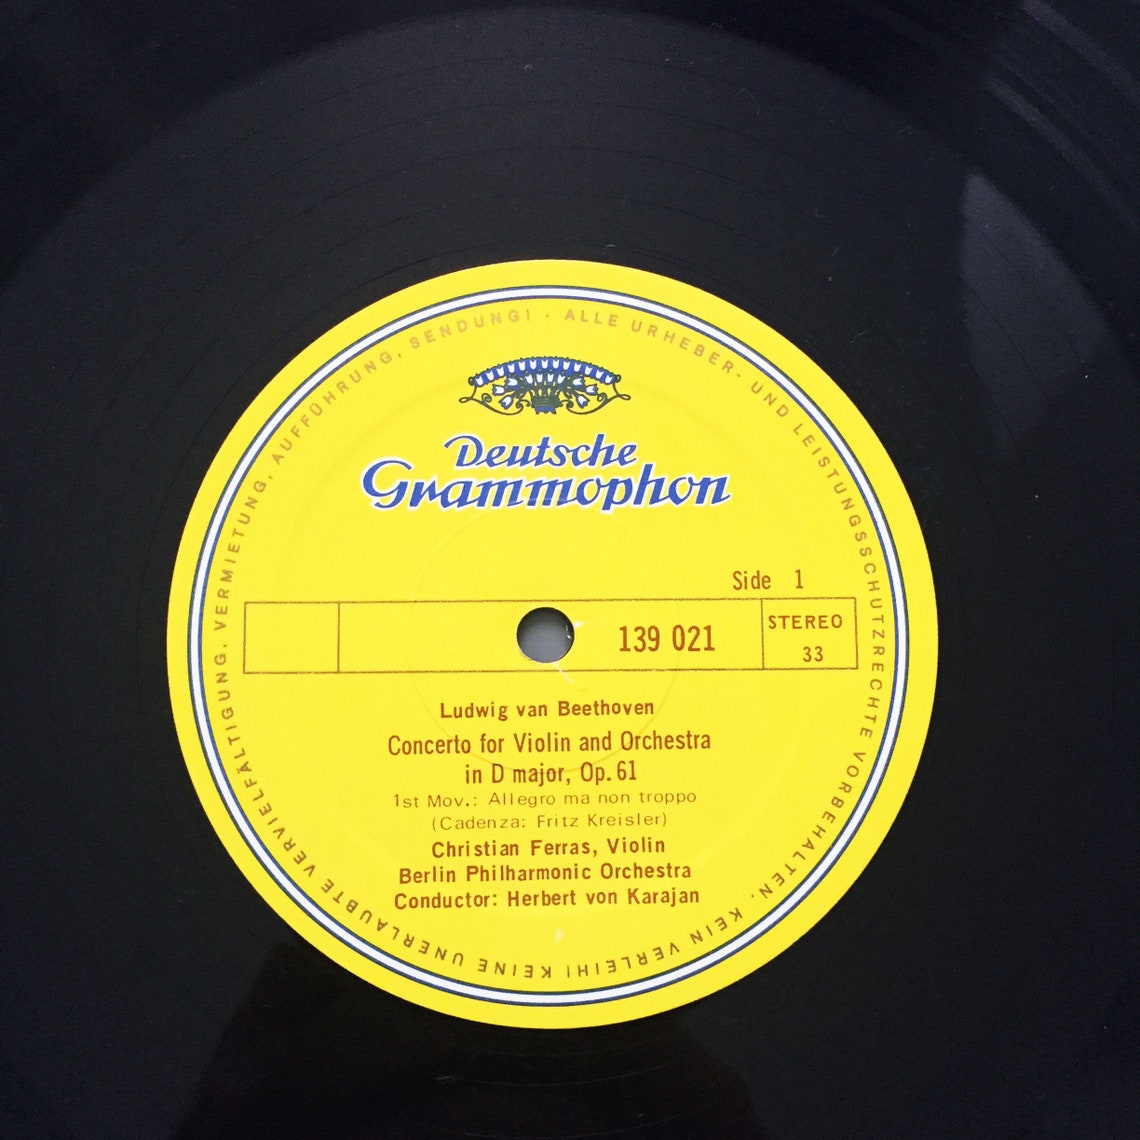 Vintage Beethoven Violin Concerto LP Record Album Vinyl 1967 - Etsy